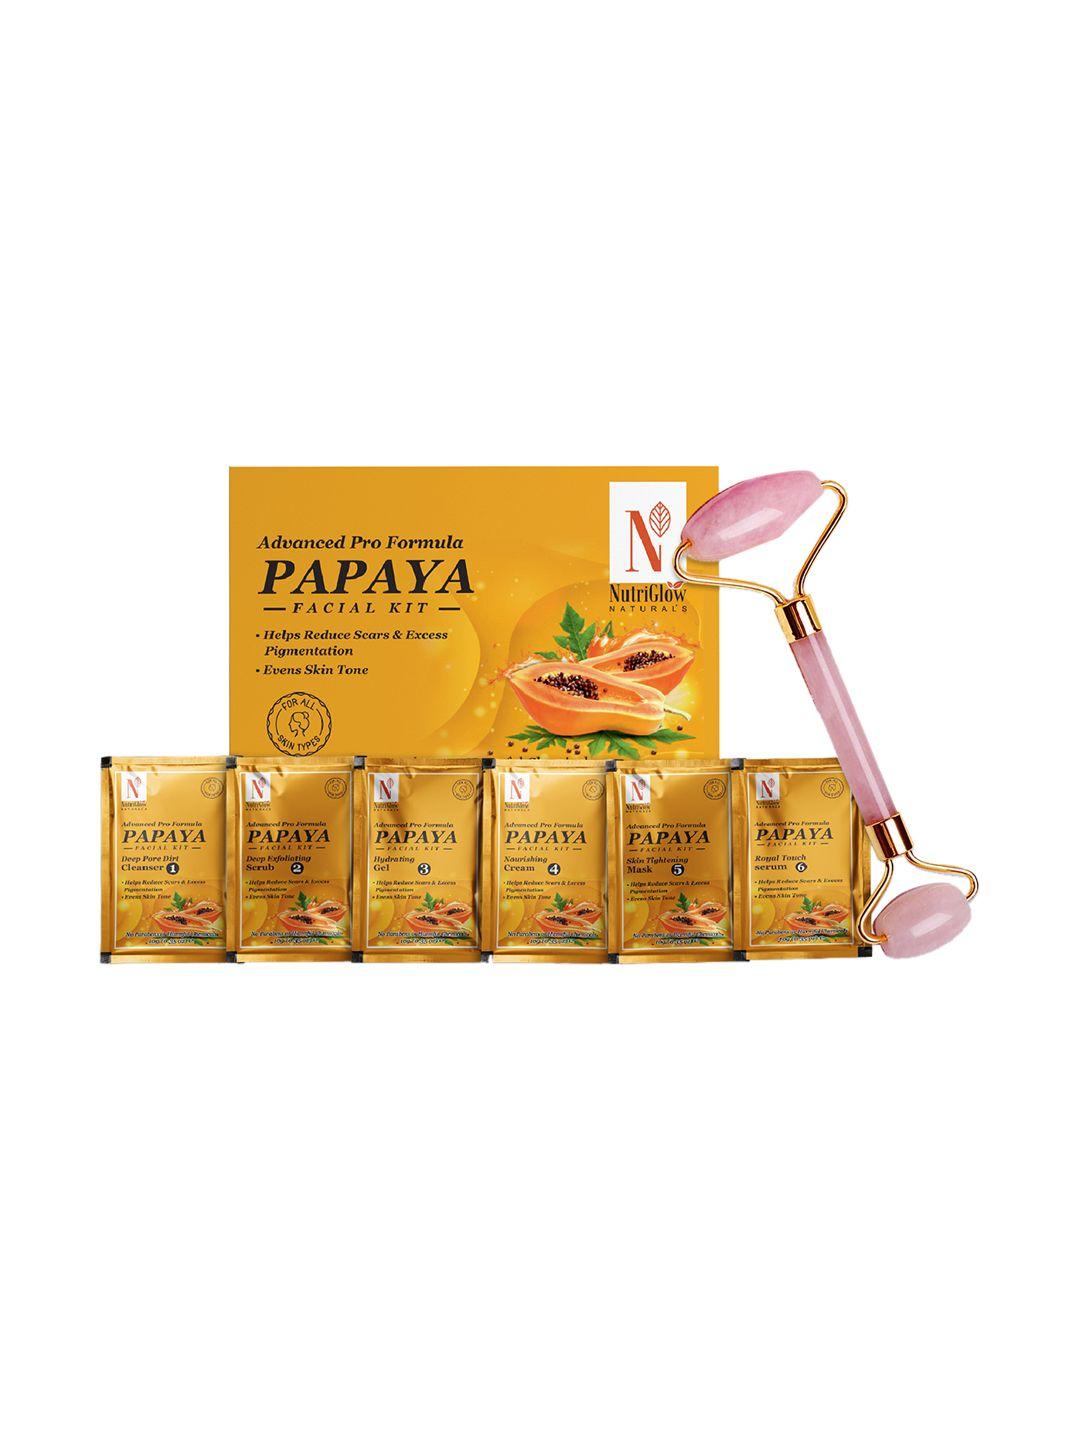 nutriglow naturals vegan advanced pro formula papaya facial kit 60g with jade roller